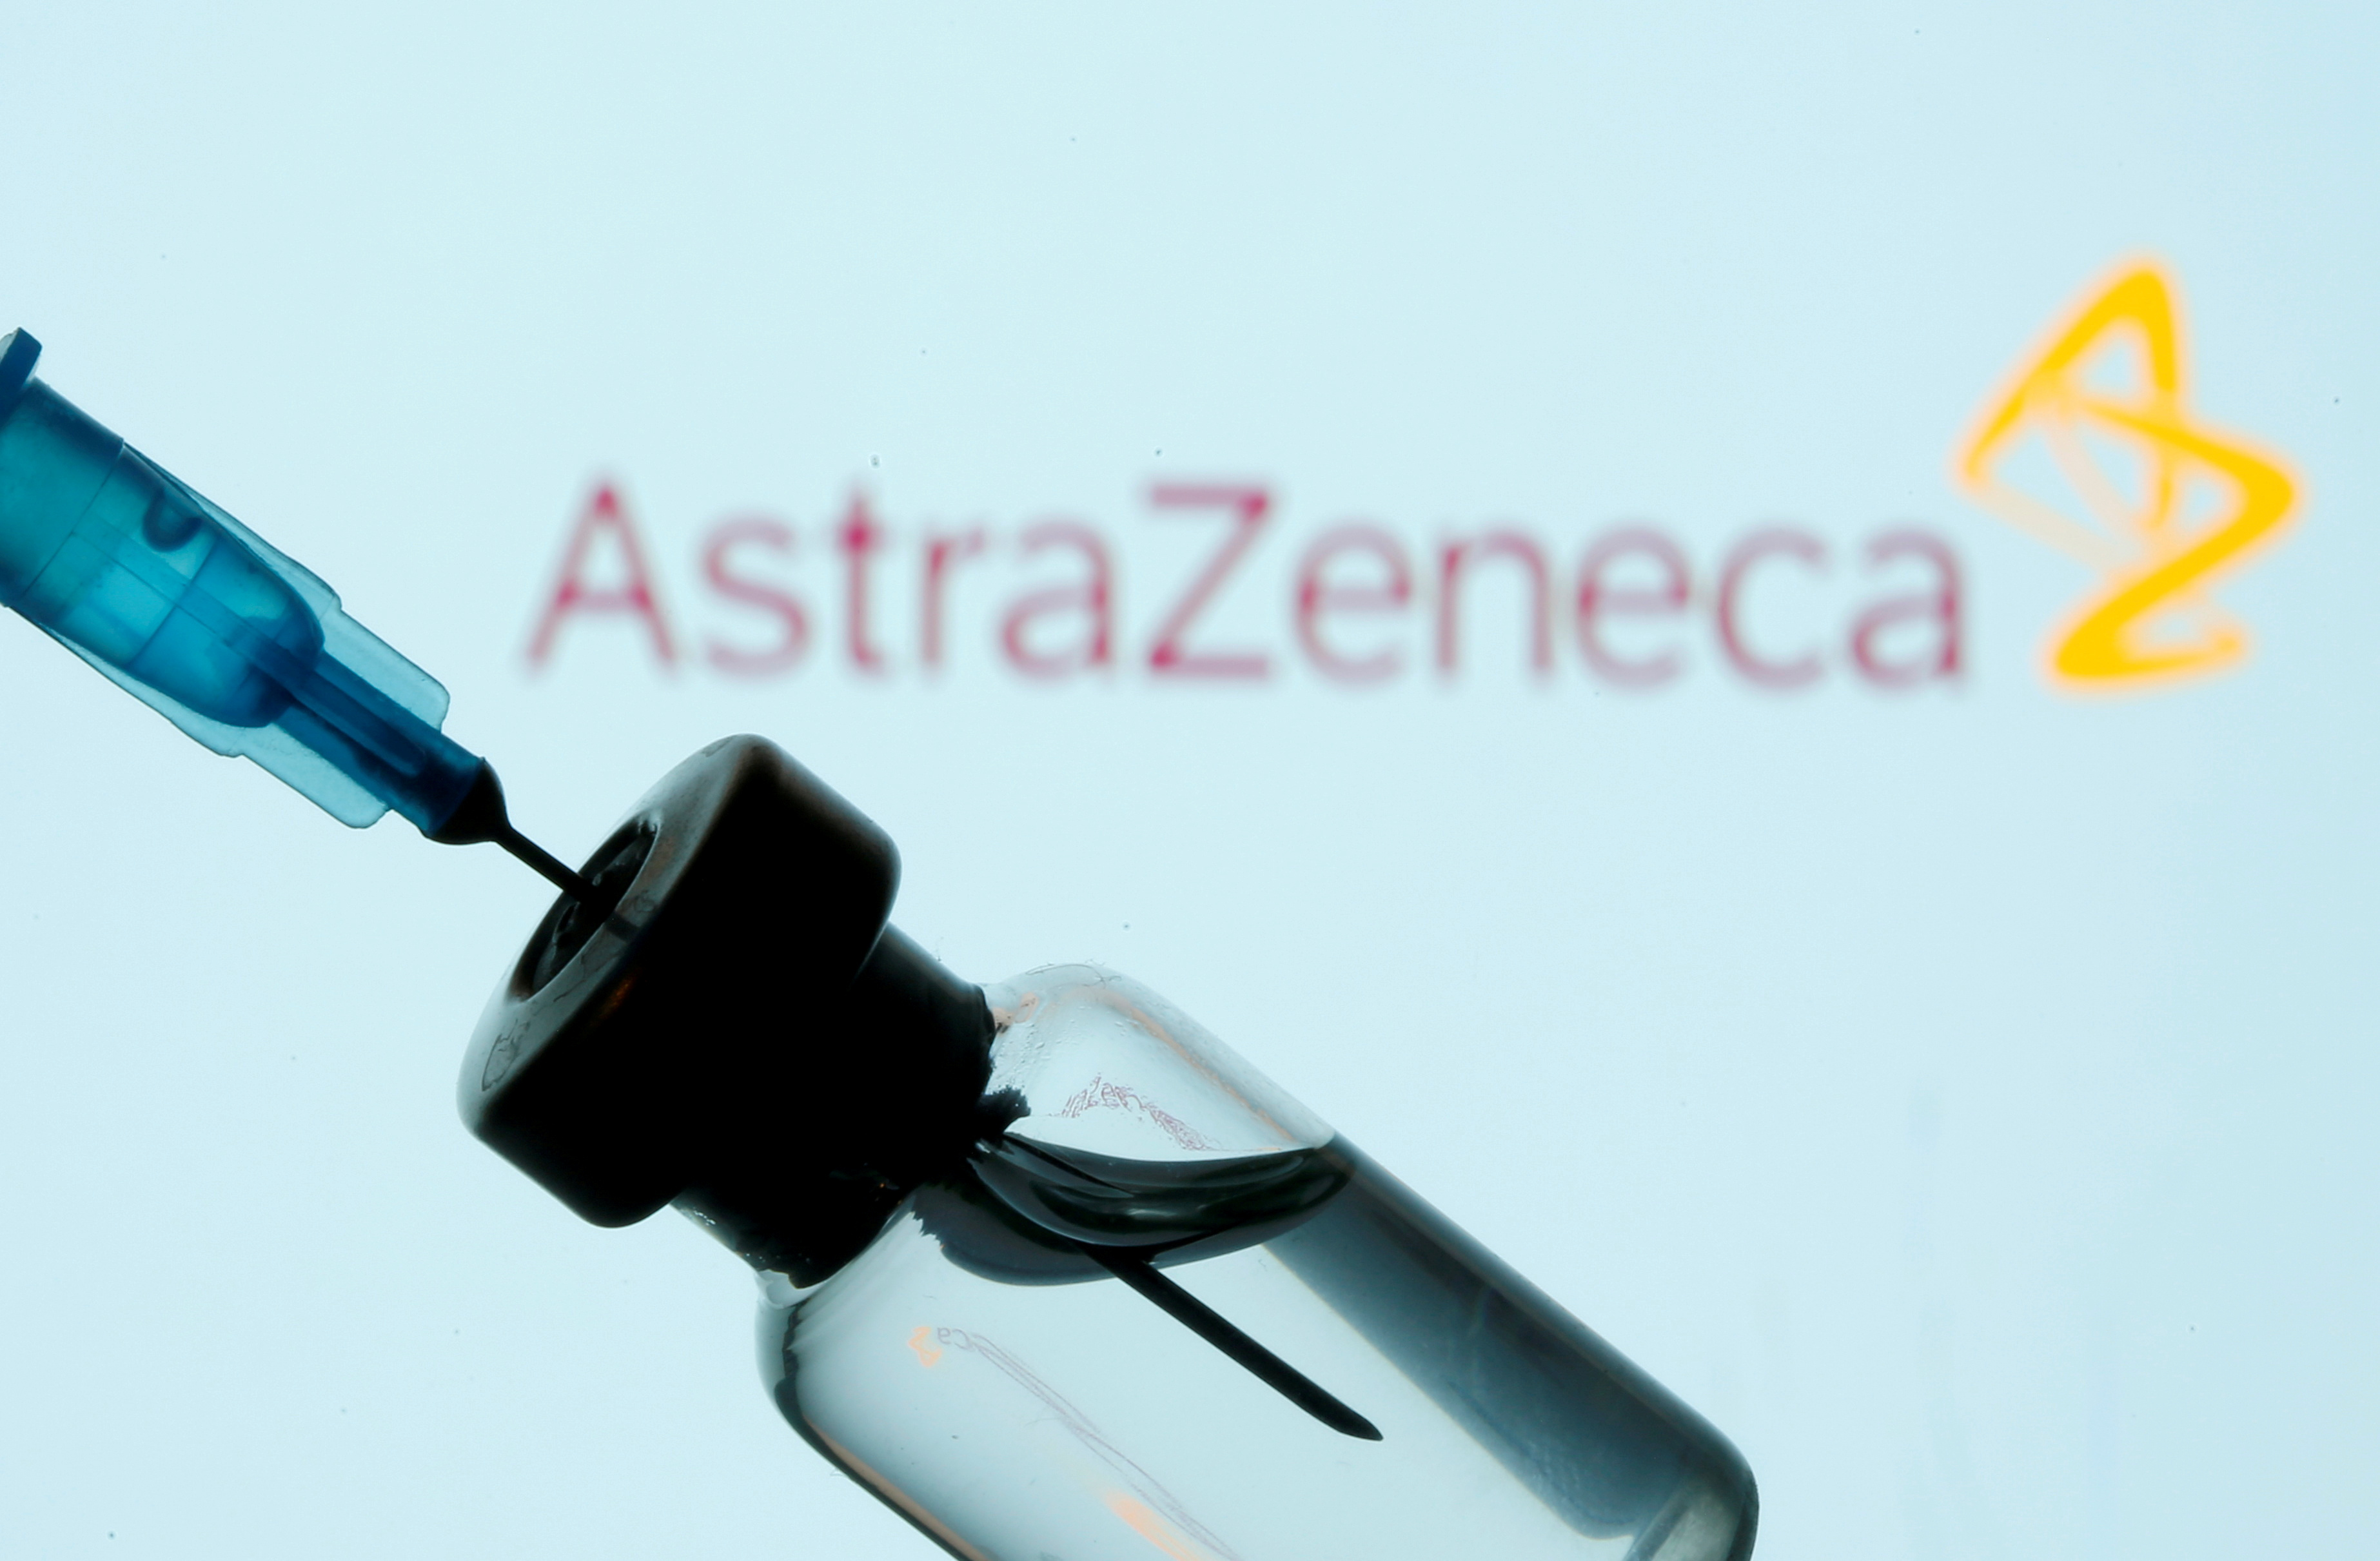 Febrero 2021 (05-02-21) Sanidad aprueba el uso de la vacuna de Astrazeneca para personas entre 18 y 55 años